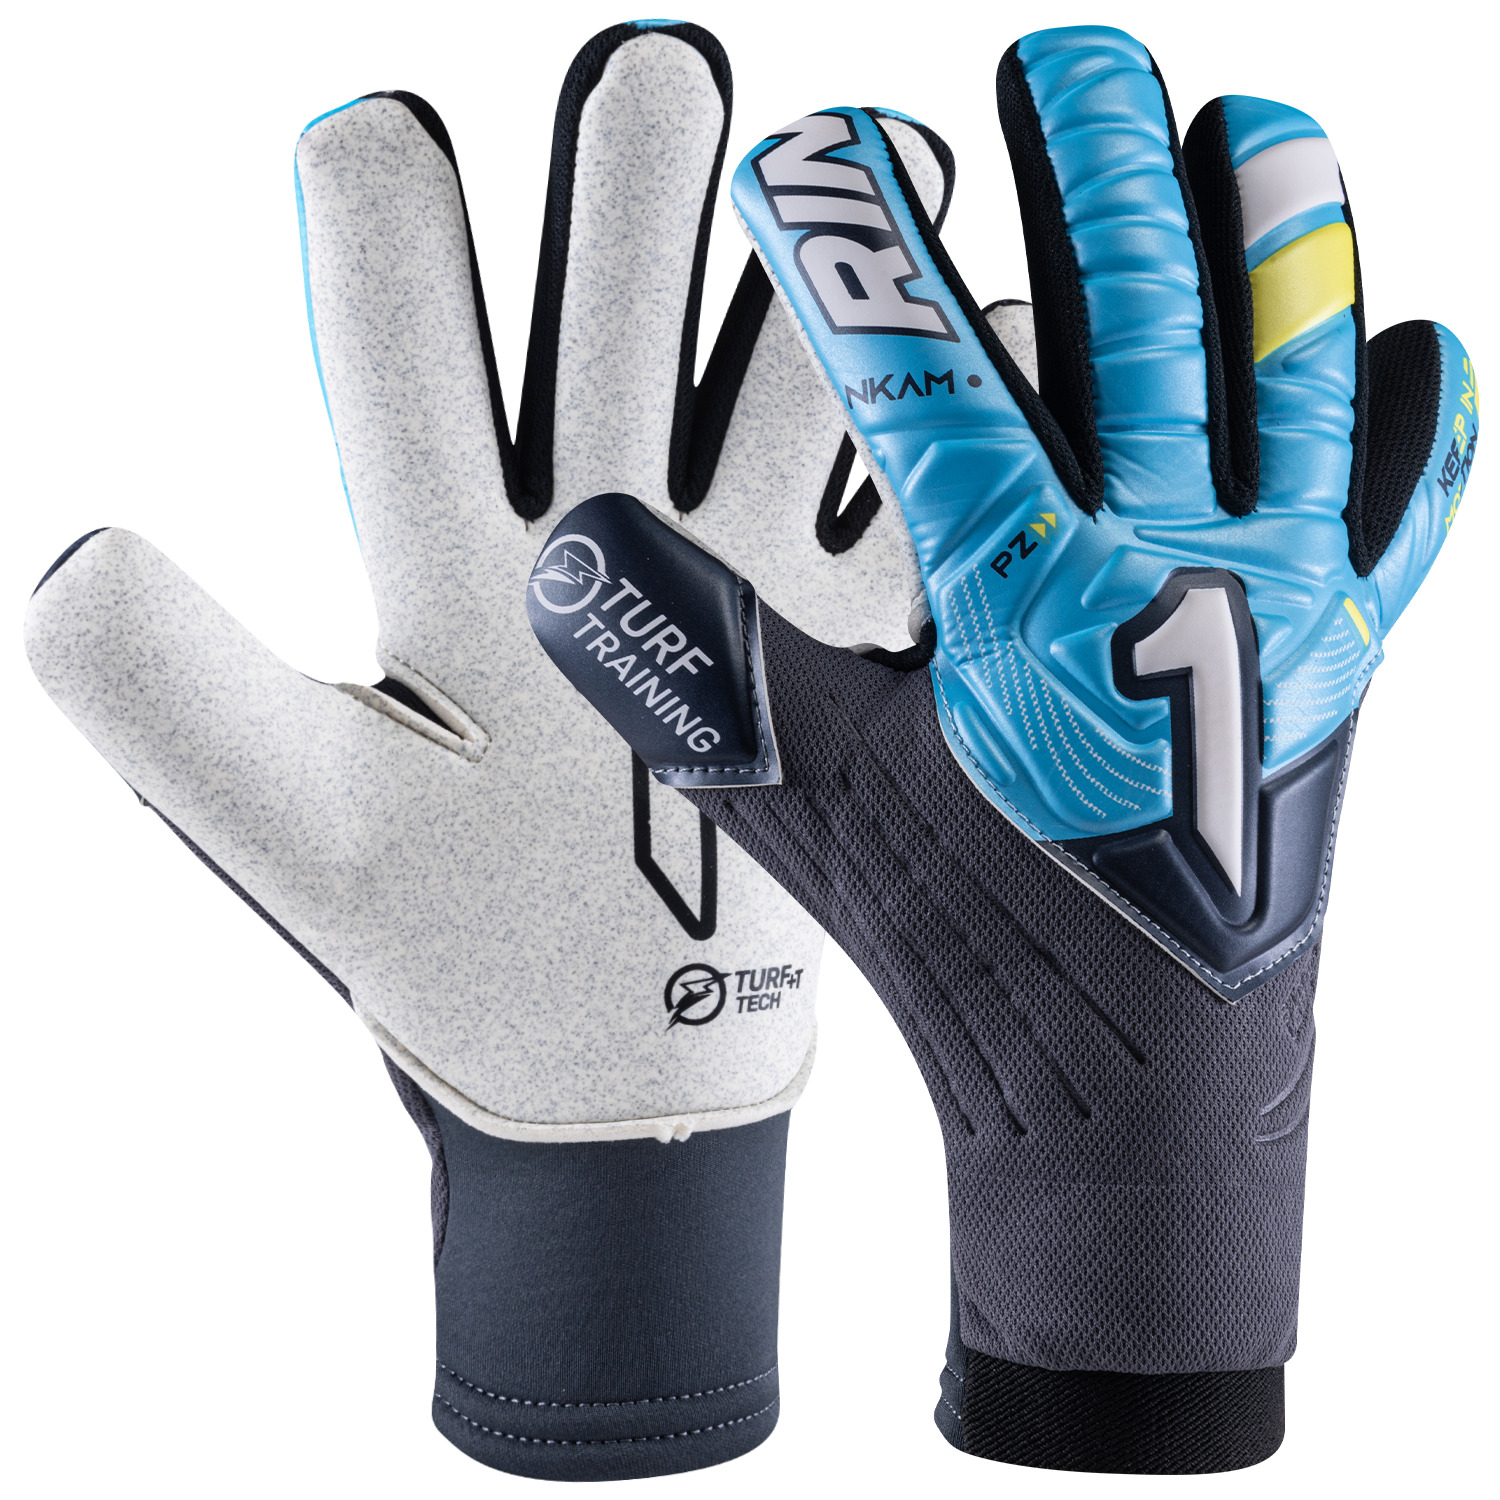 ⚽️Rinat NKAM-Onana TURF Goalkeeper Glove